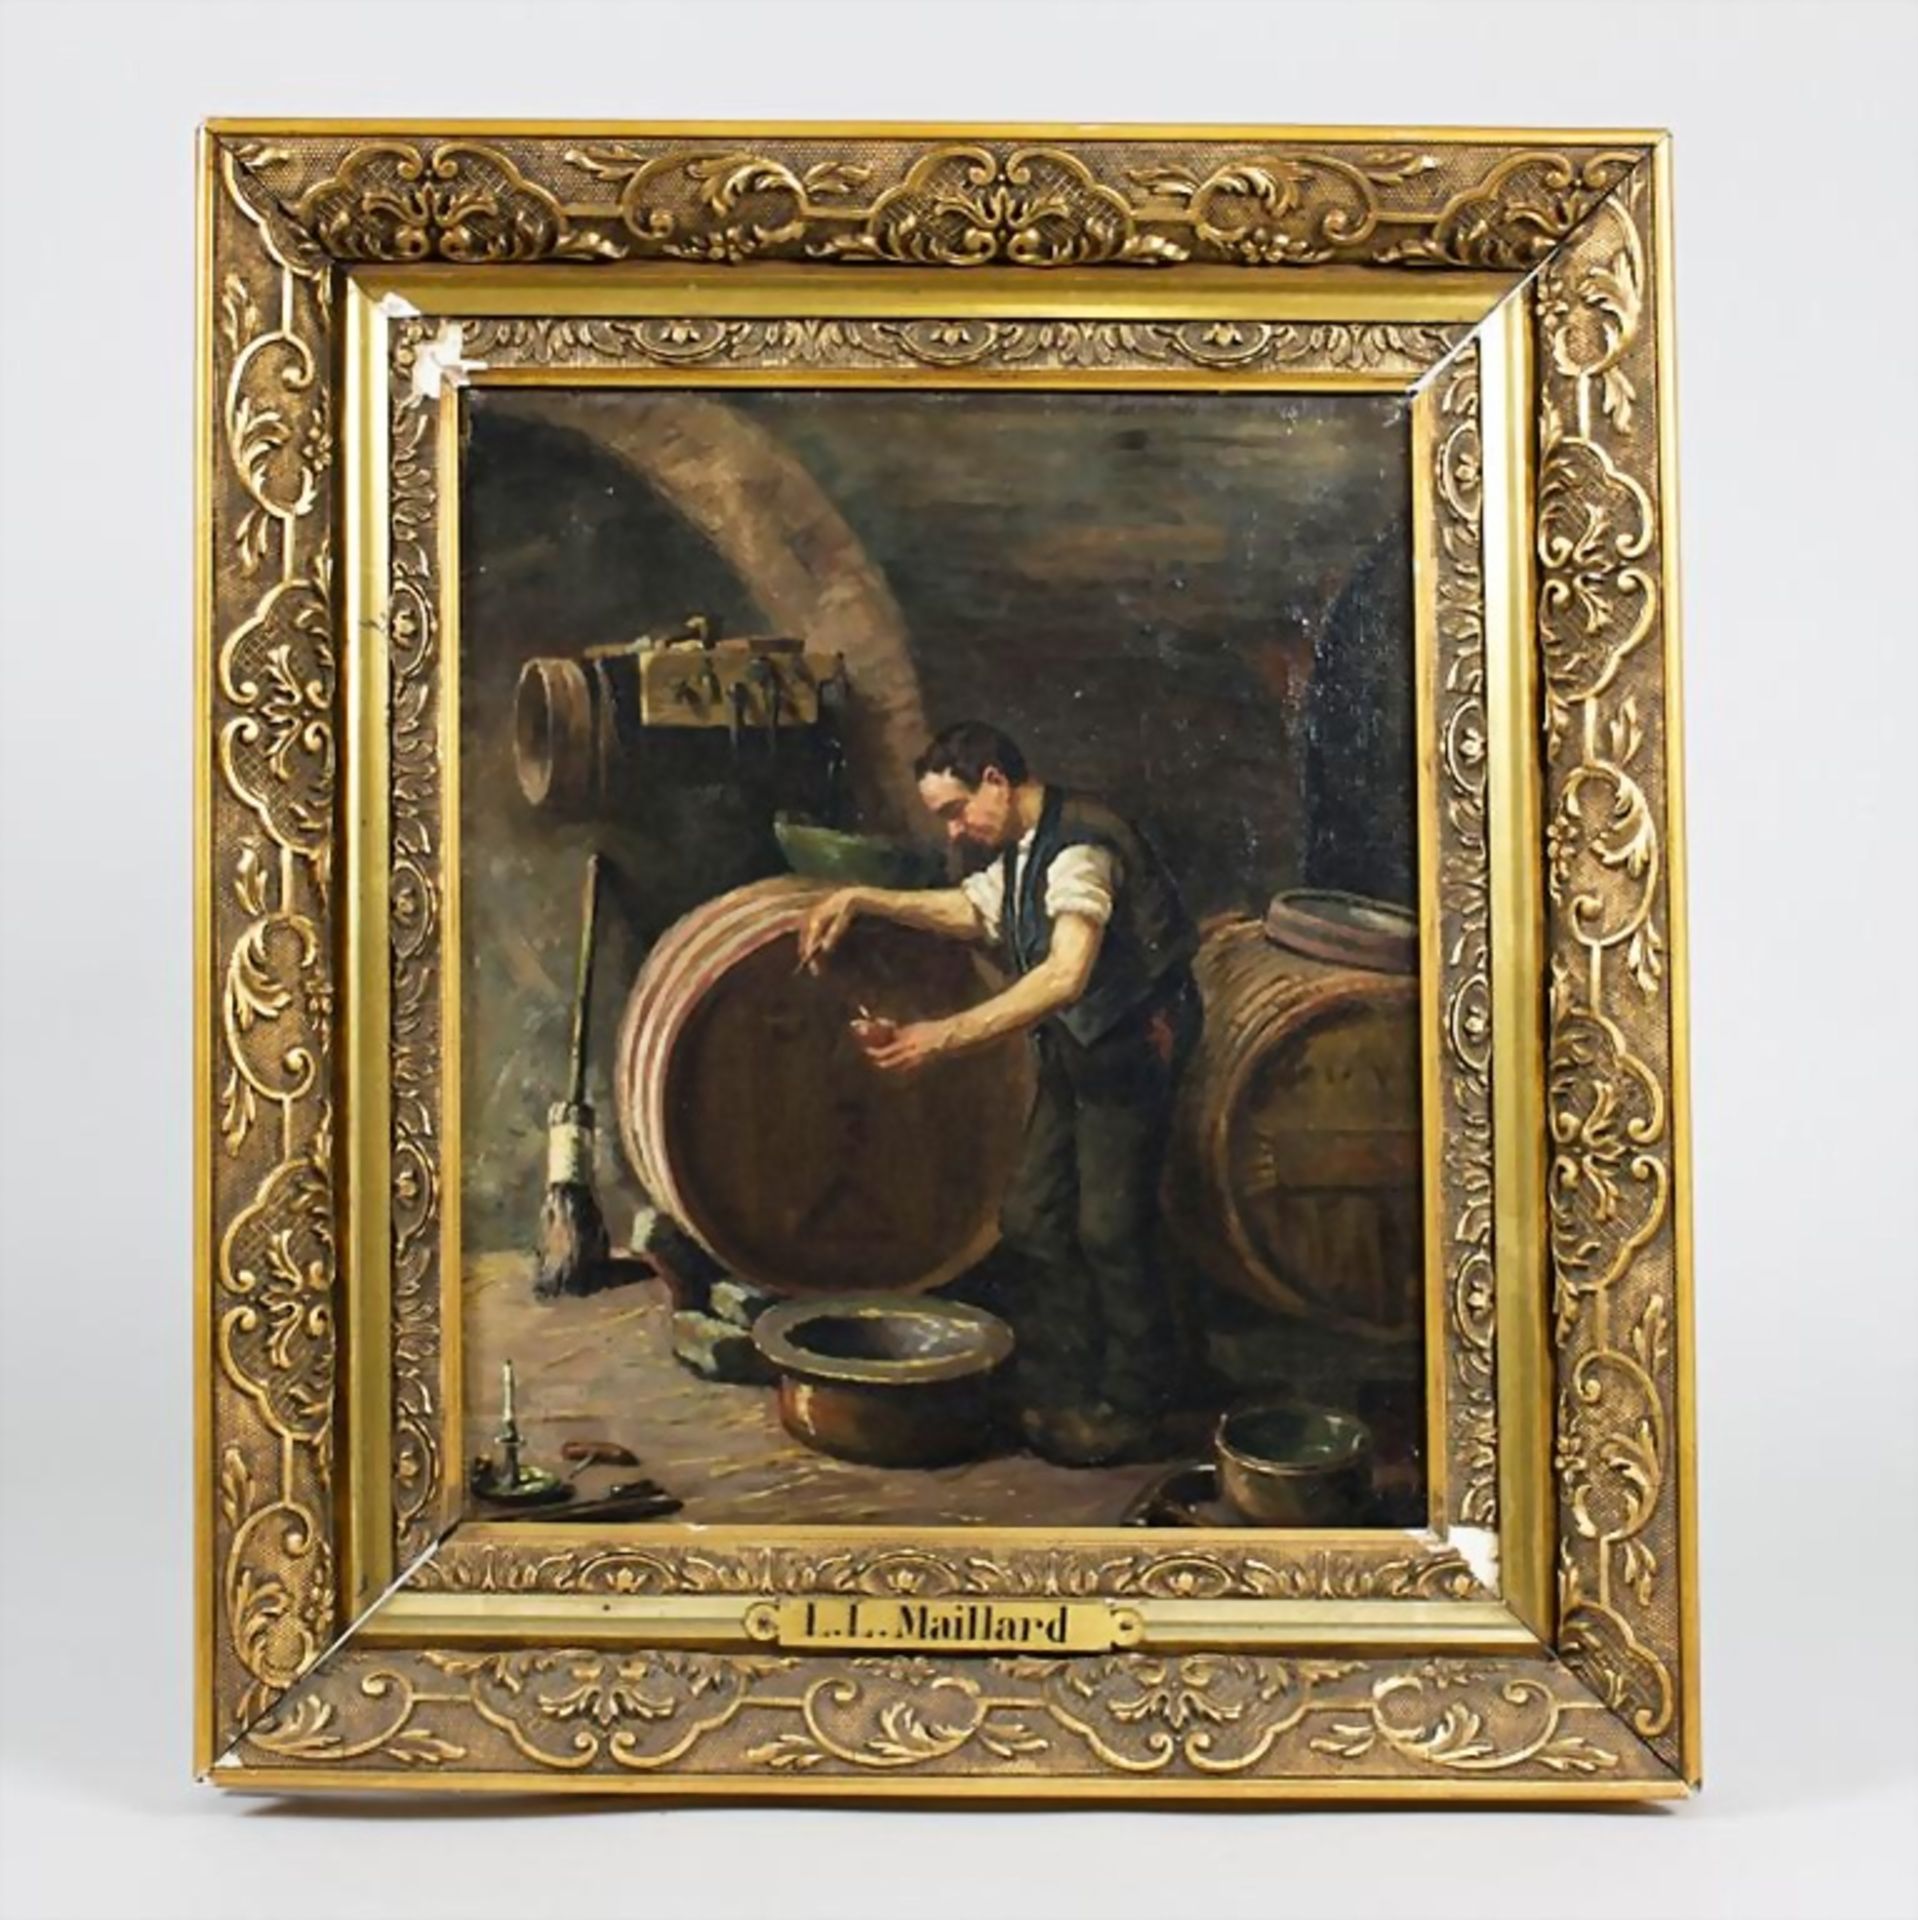 Winzer im Weinkeller/Wine Grower In The Wine Cellar, L. L. Maillard, Frankreich, 19. Jh. - Bild 2 aus 3